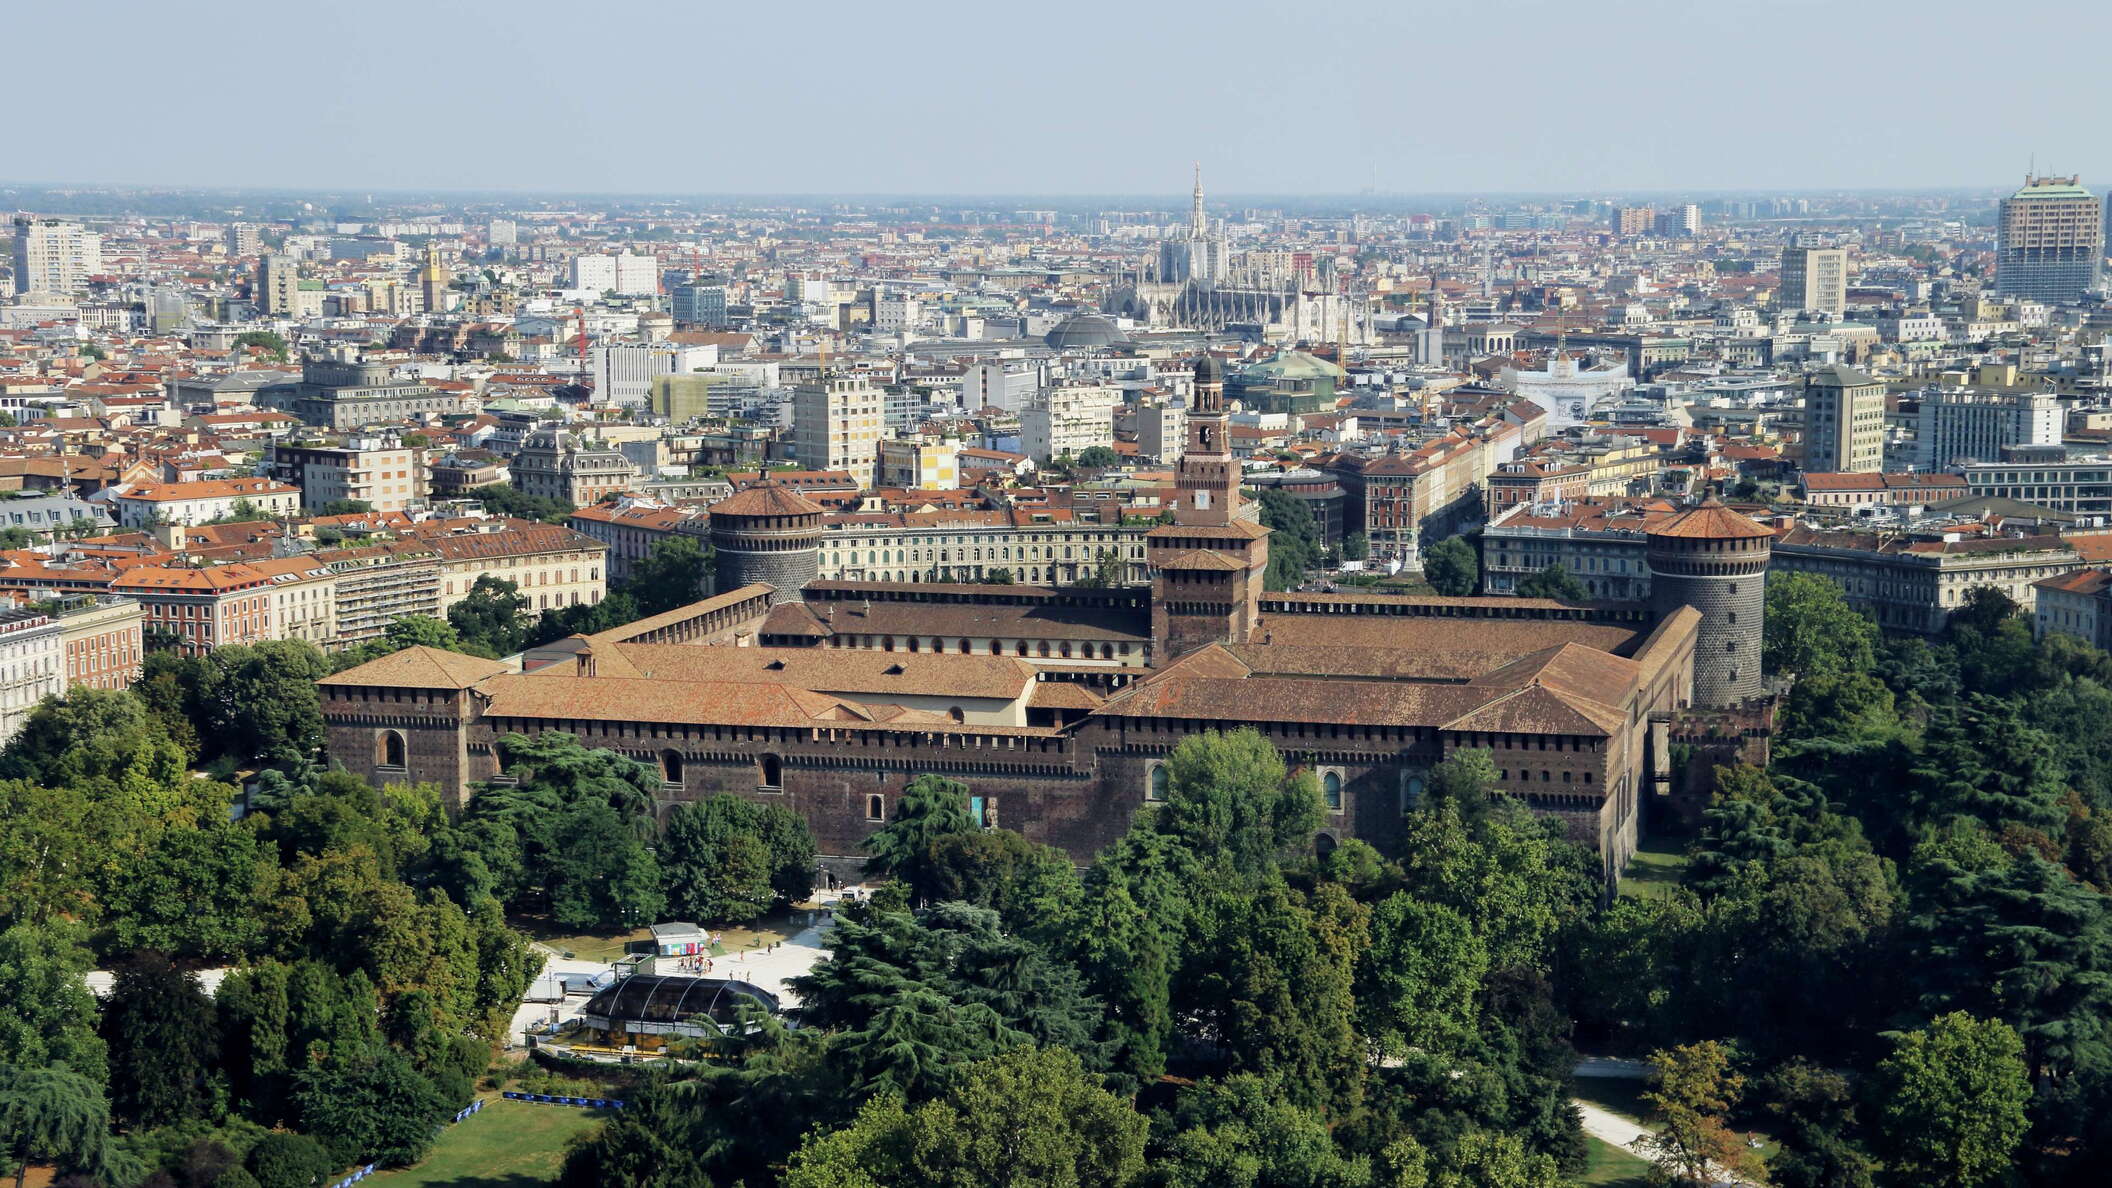 Milano | Parco Sempione with Castello Sforzesco